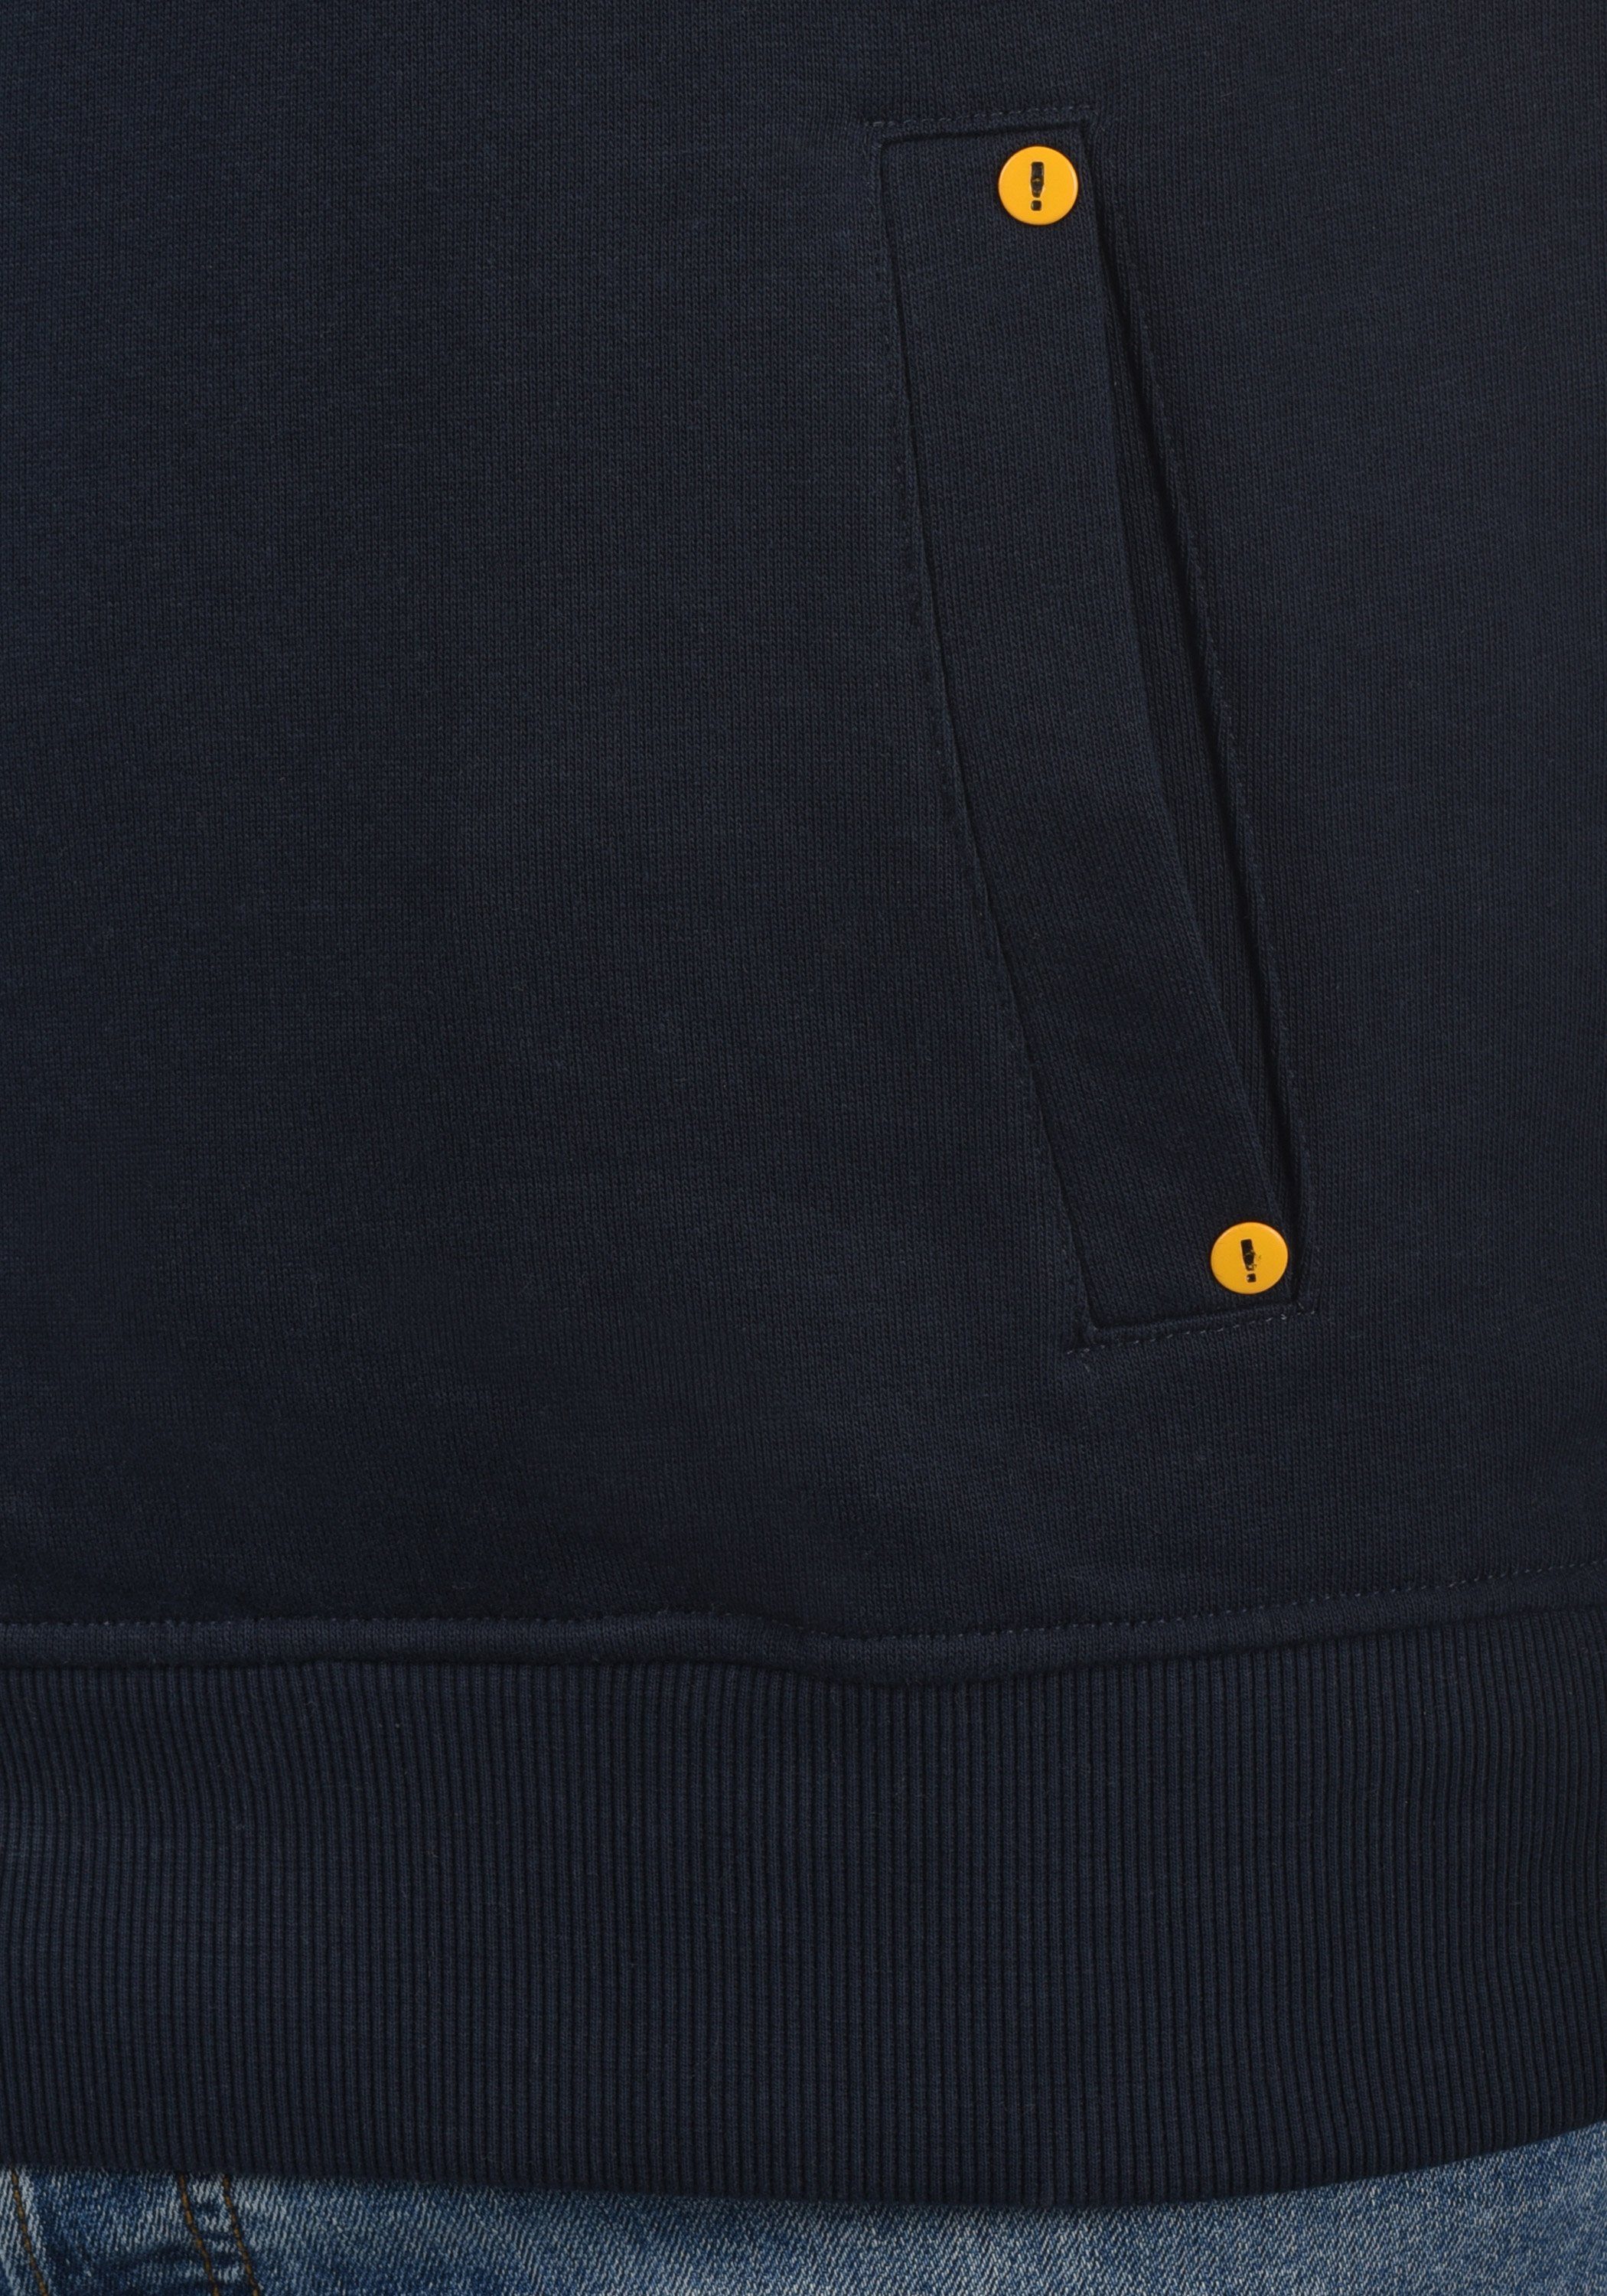 kontrastreichen mit farblichen Insignia !Solid Blue Kapuzenpullover (194010) SDKaan Details Sweatshirt